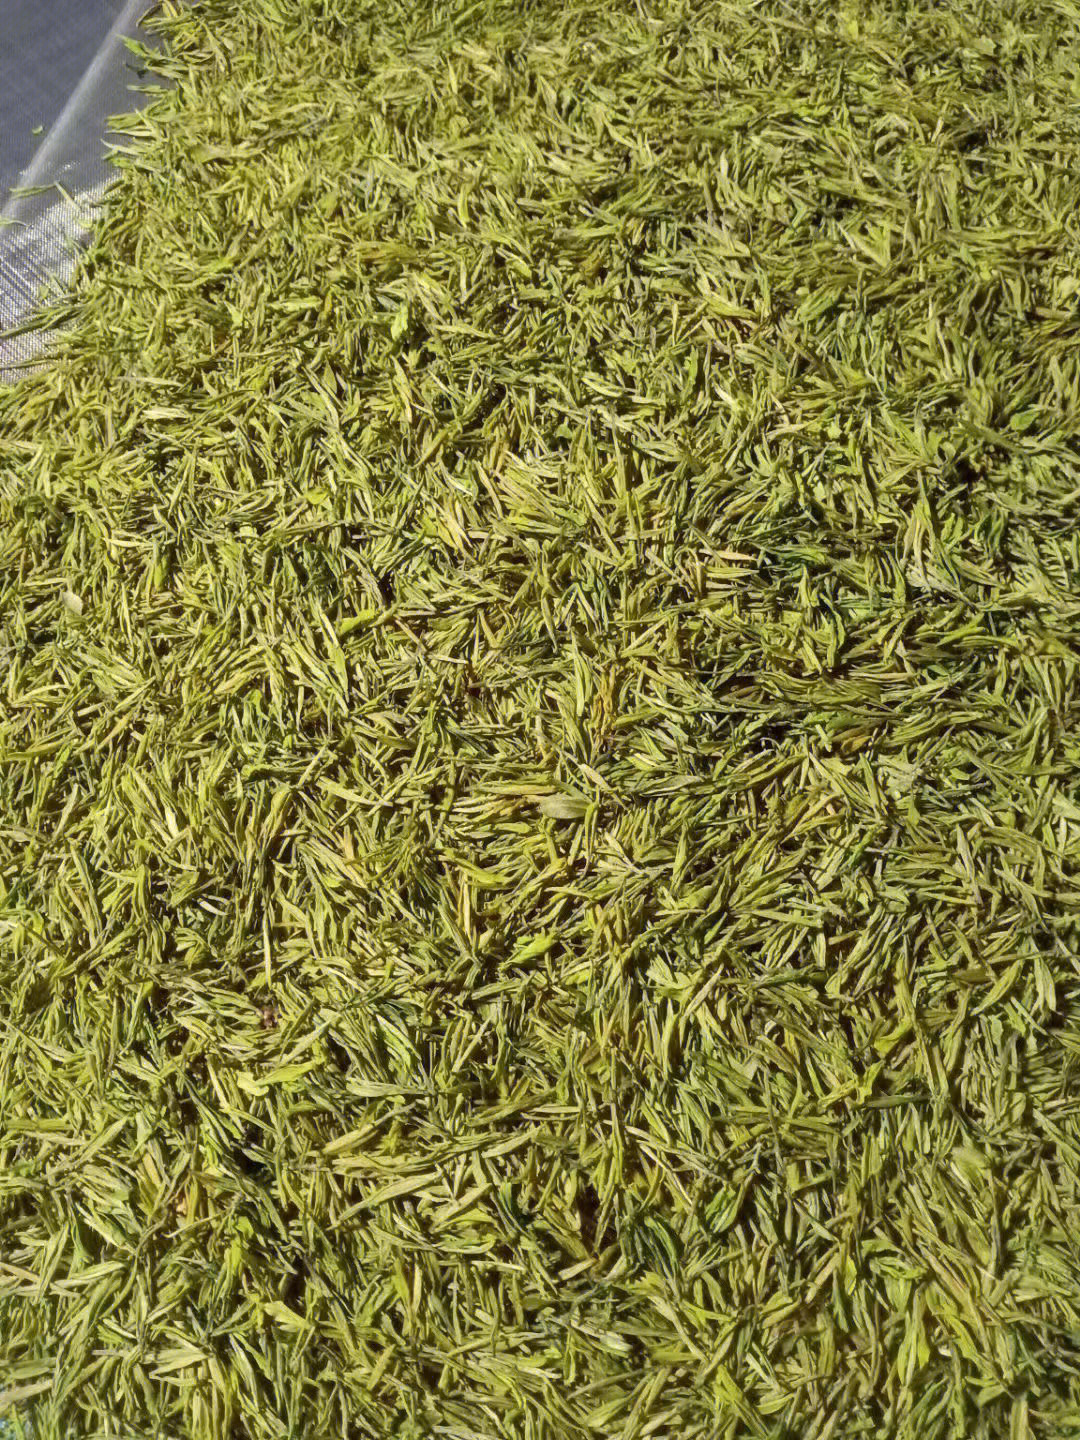 春茶95上市,老爸自己种的黄茶——中黄3号中黄3号这个品种的茶叶